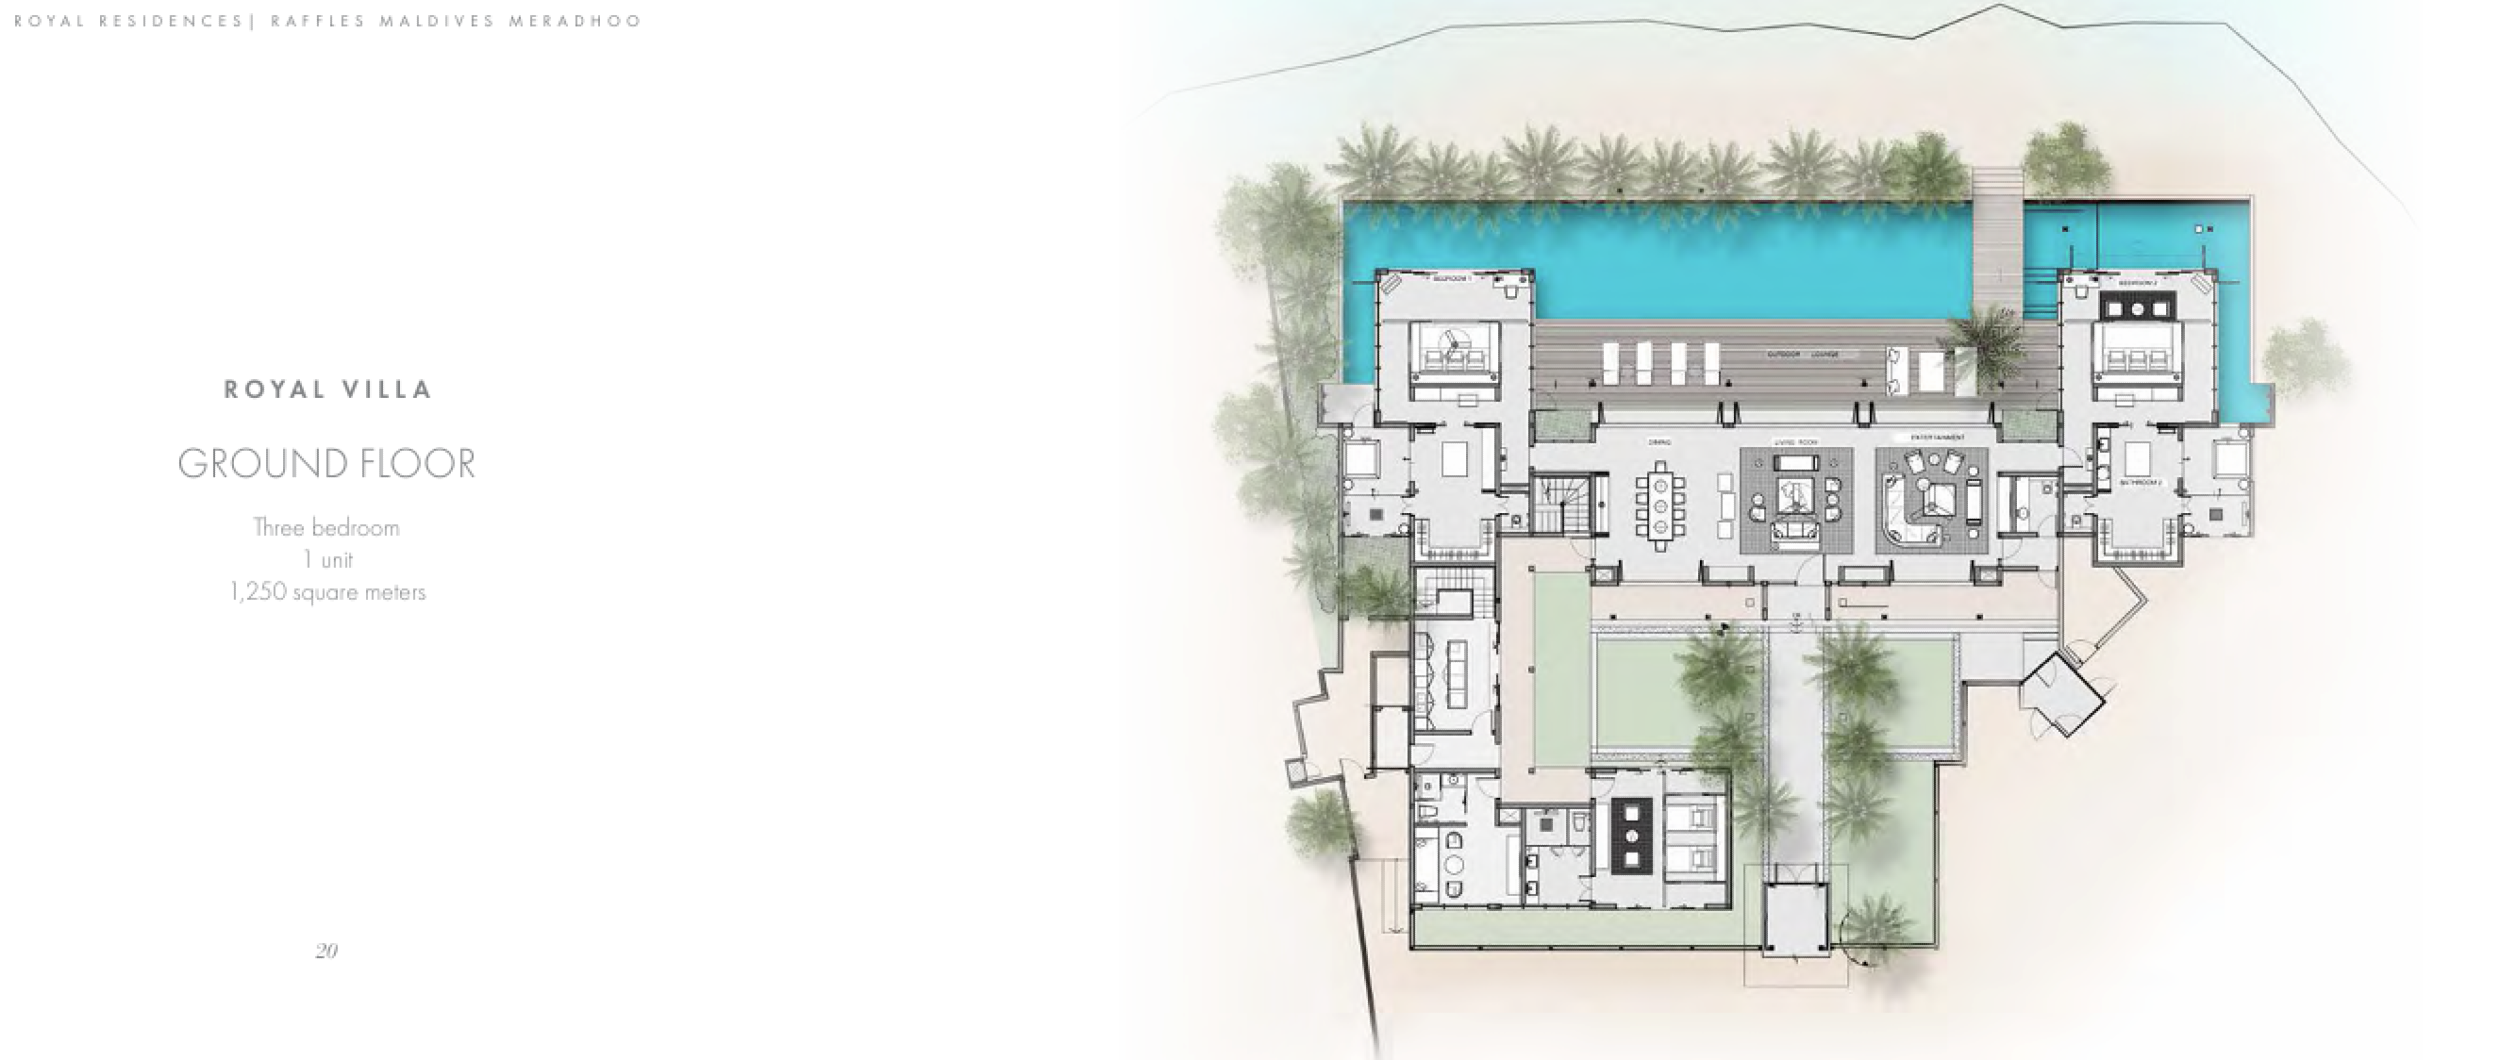 Raffles Royal Residence with Pool (3bedroom) floor plan - Raffles Maldives Meradhoo